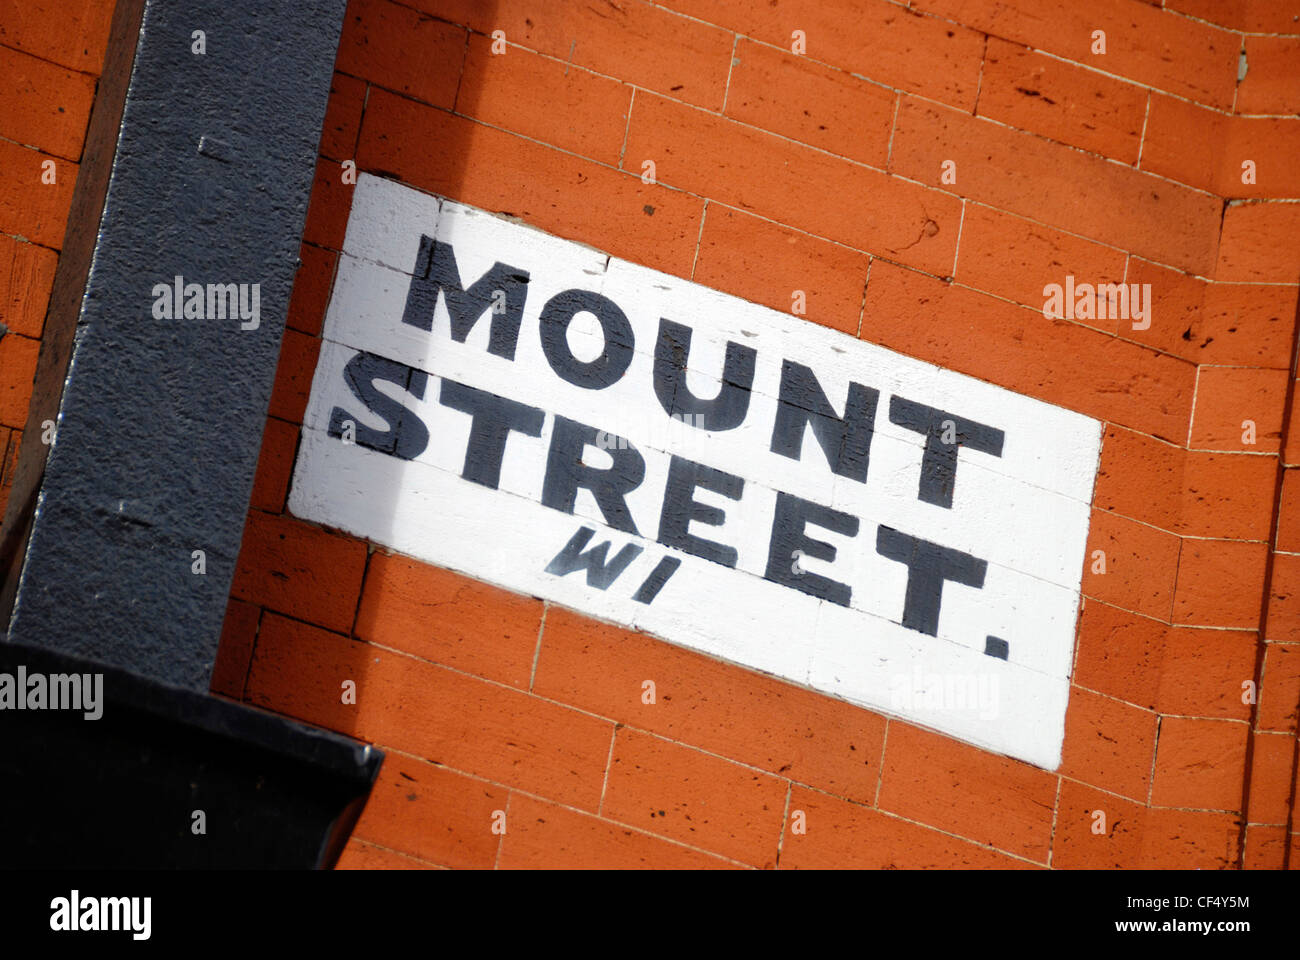 Mount Street W1 street sign peint sur le côté d'un immeuble dans le quartier de Mayfair. Banque D'Images